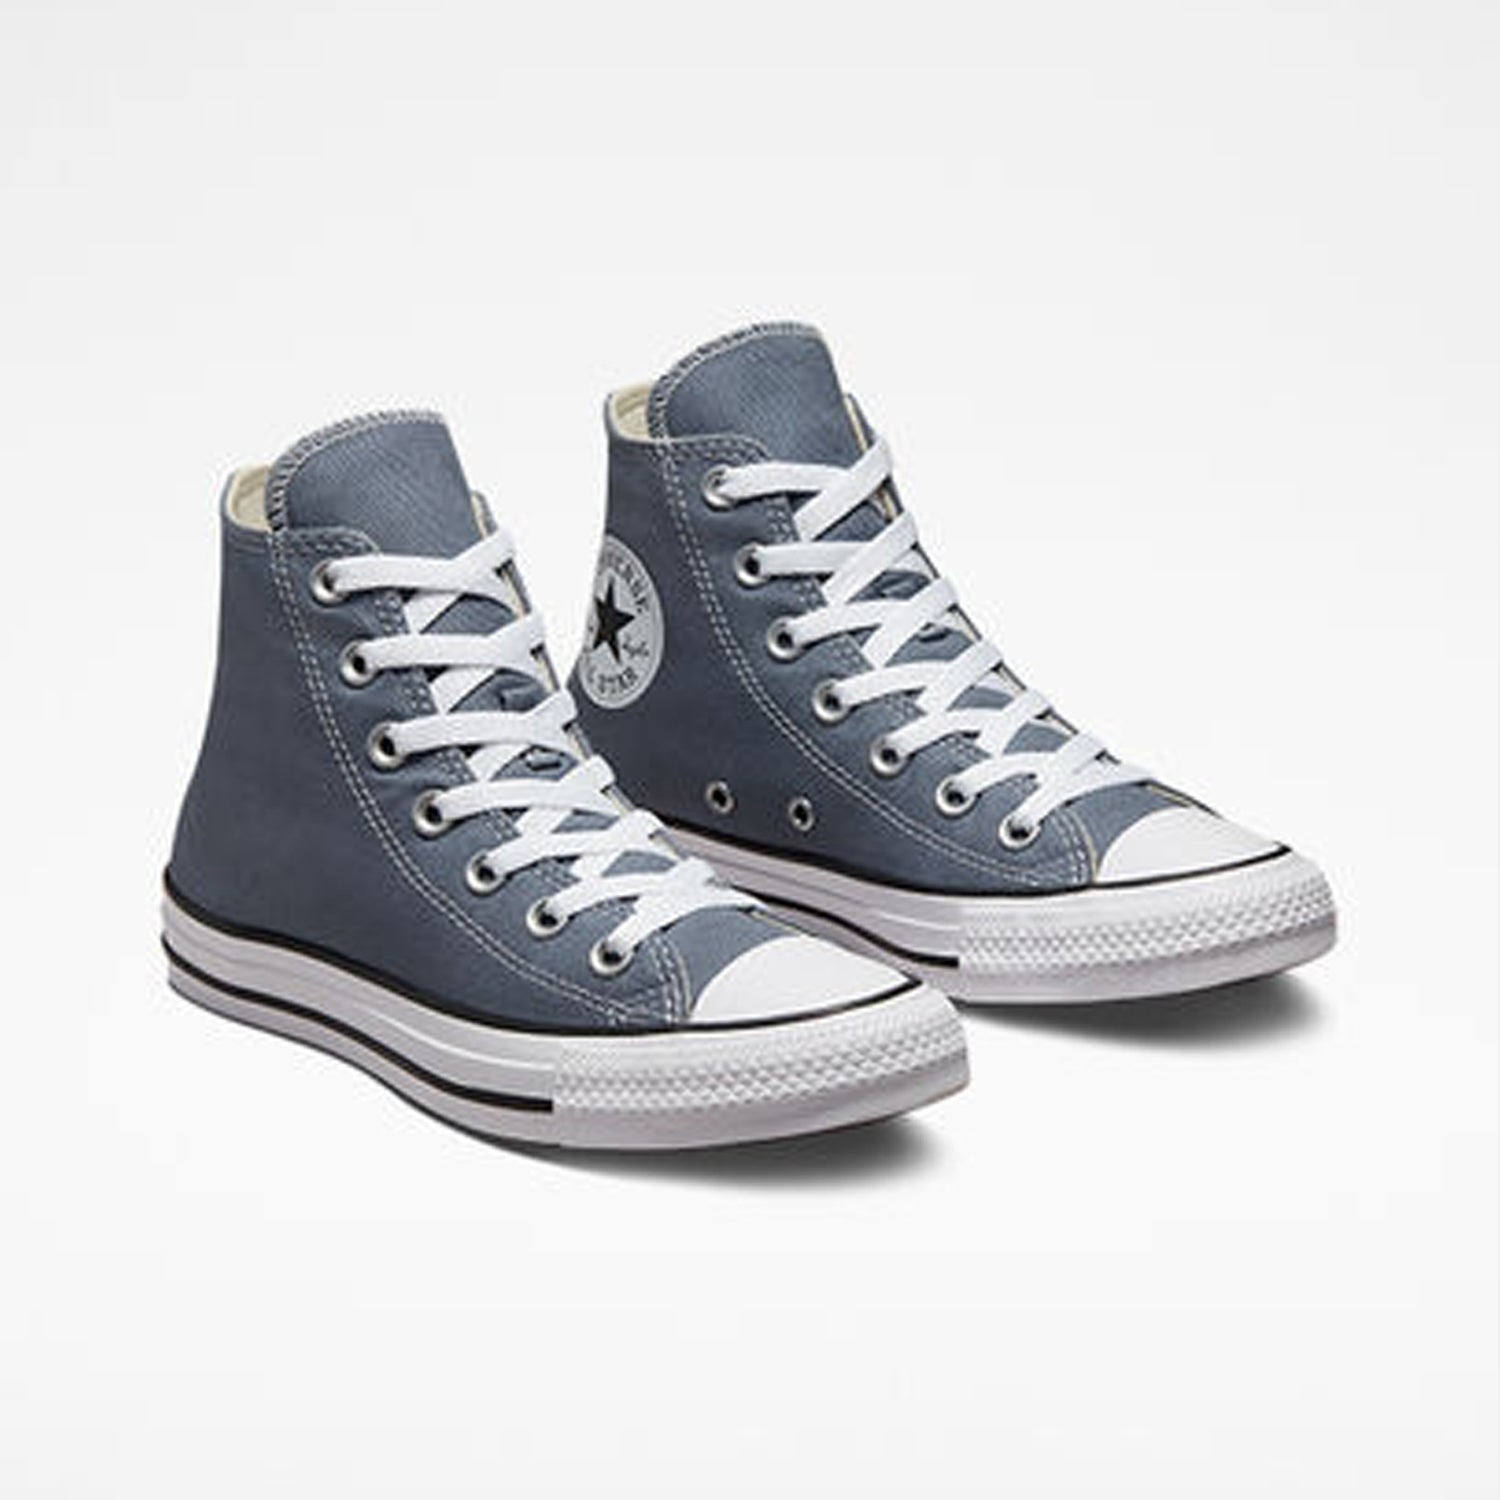 אולסטאר נעלי סניקרס גבוהות בצבע כחול בהיר נשים וגברים-Converse All Star-35-נאקו